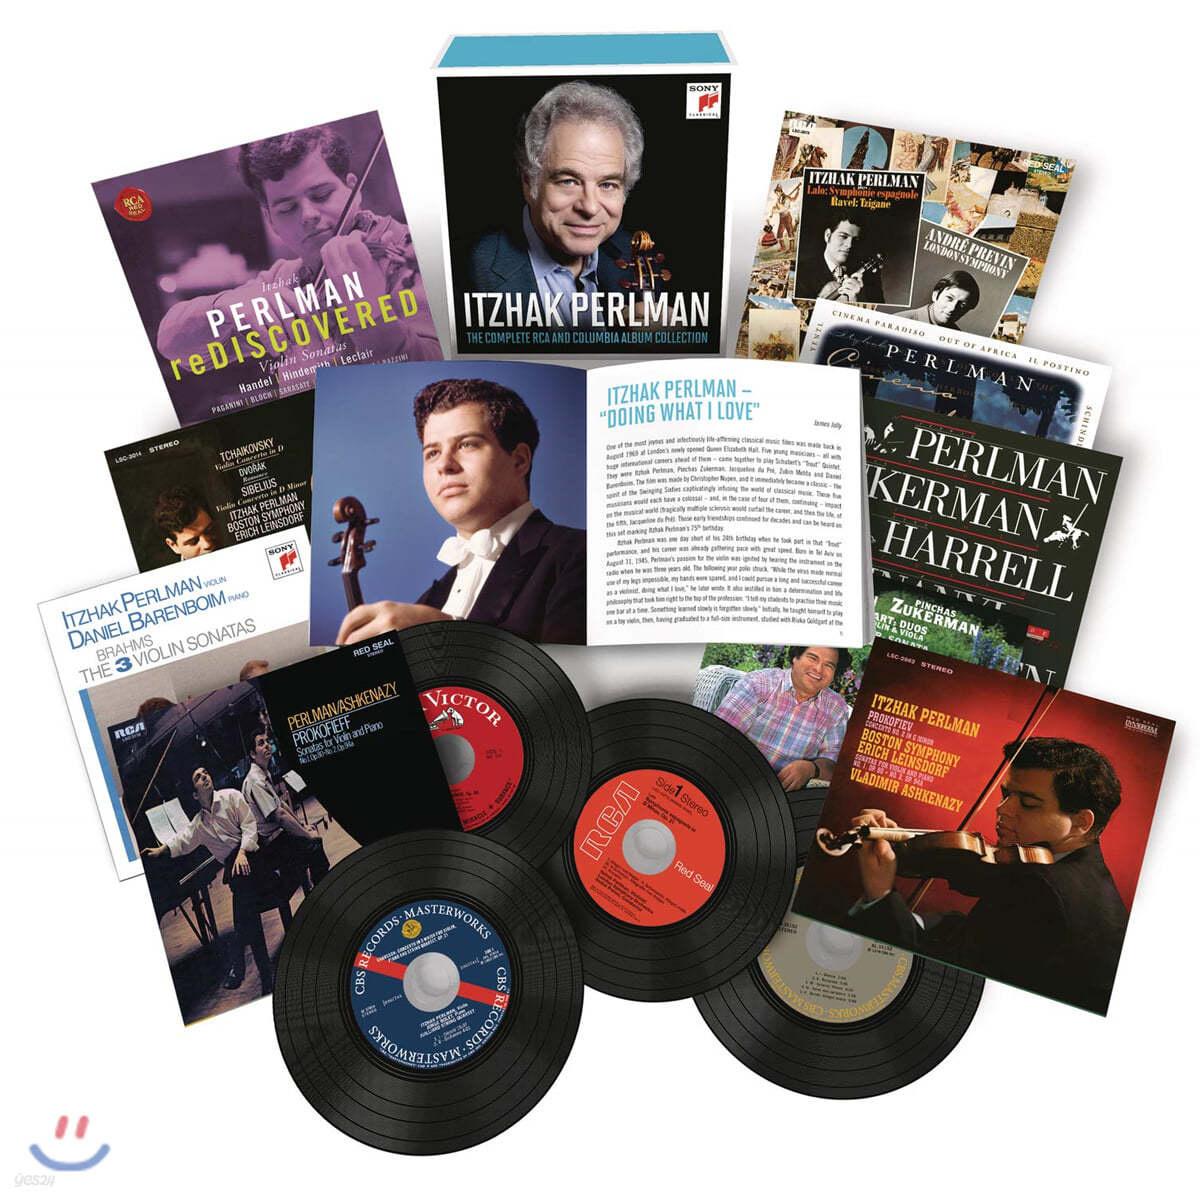 이차크 펄만 RCA &amp; 컬럼비아 녹음 전집 (Itzhak Perlman - The Complete RCA and Columbia Album Collection)